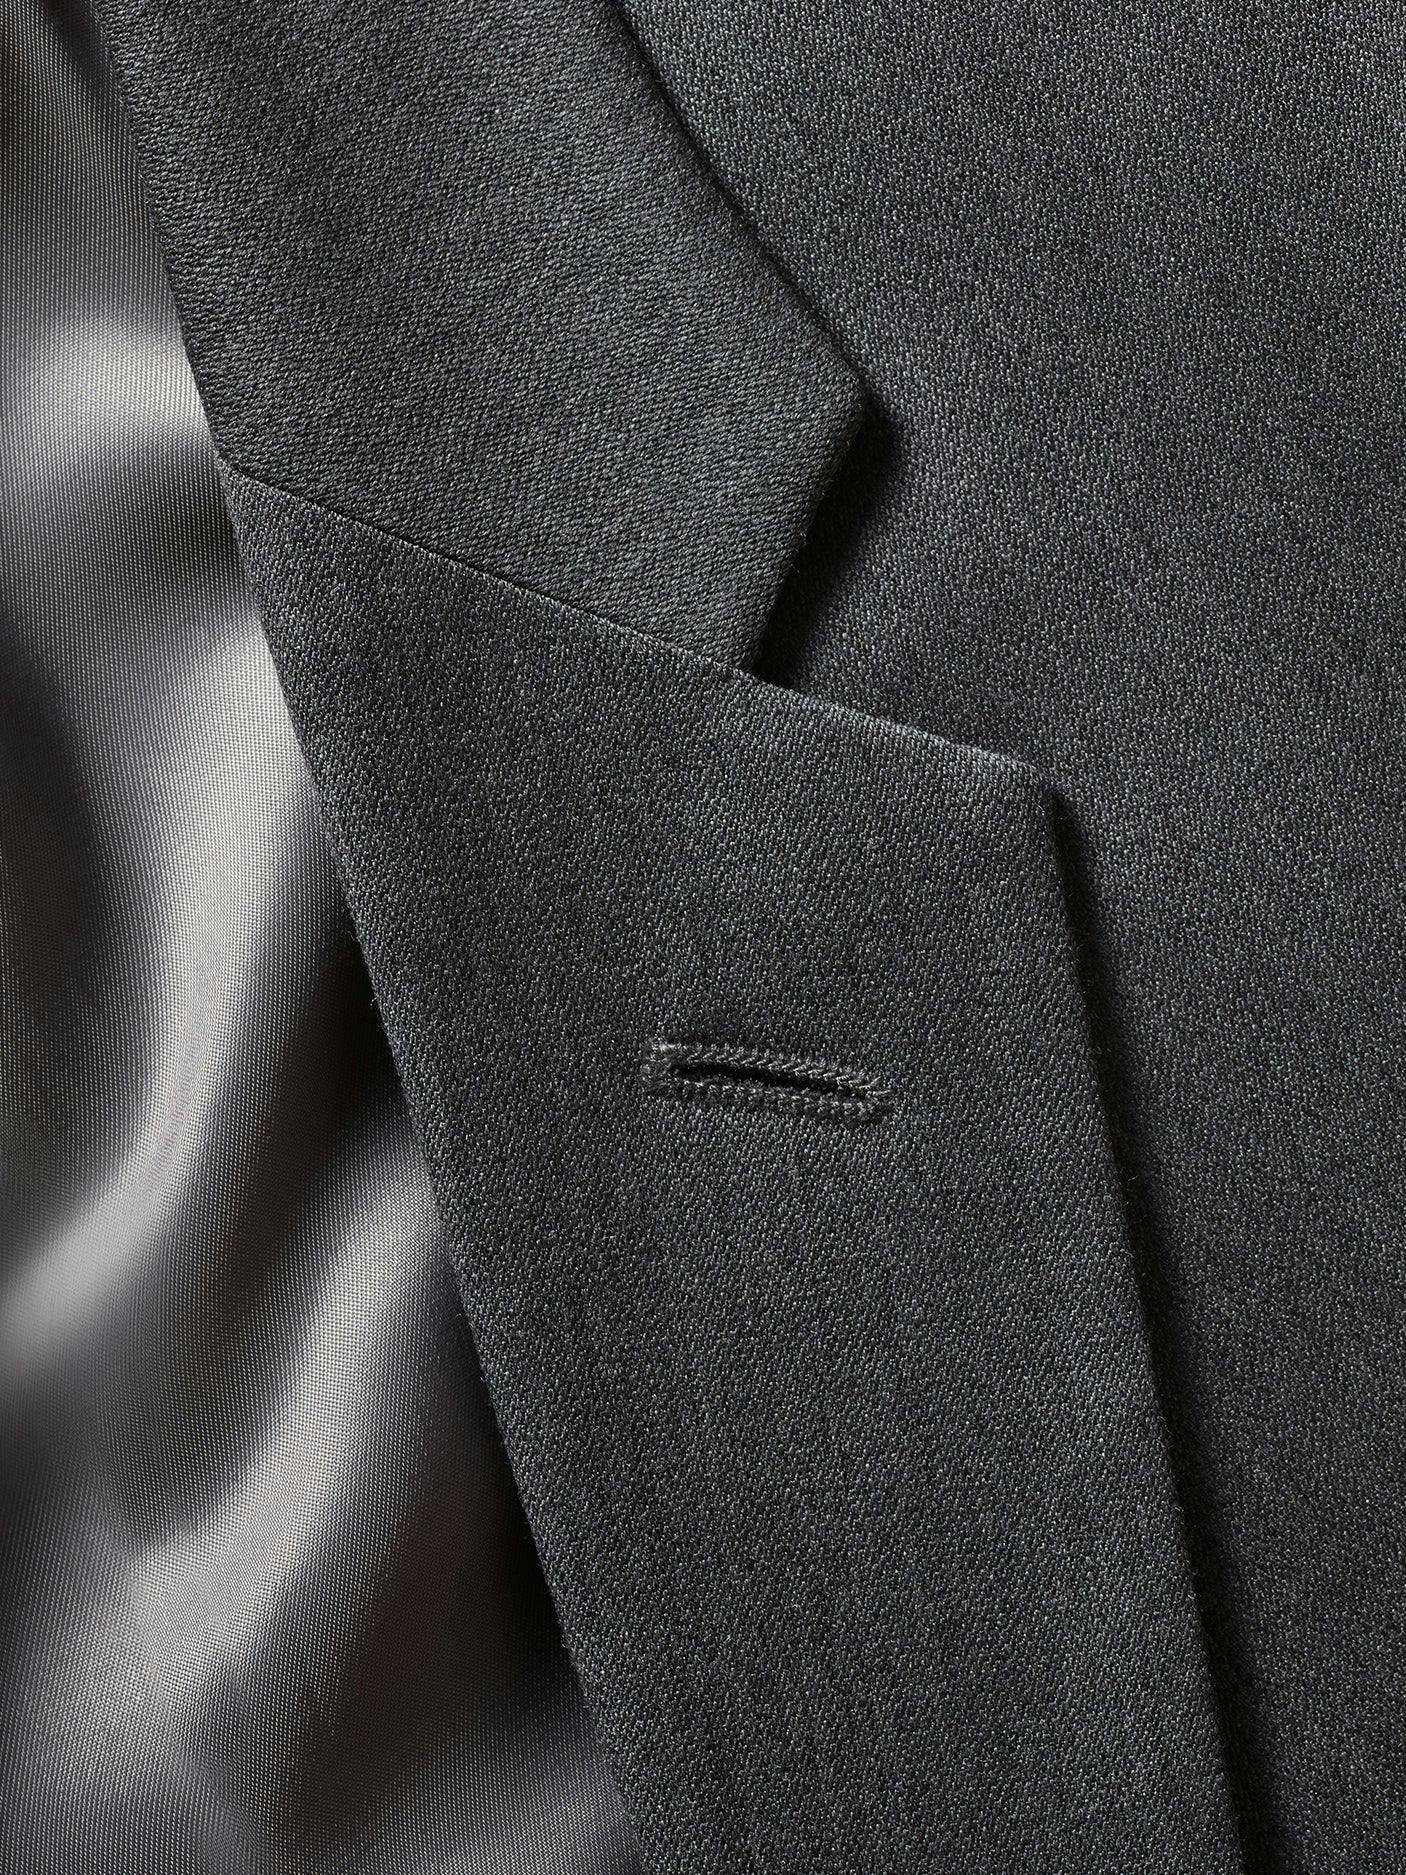 Grey Suit